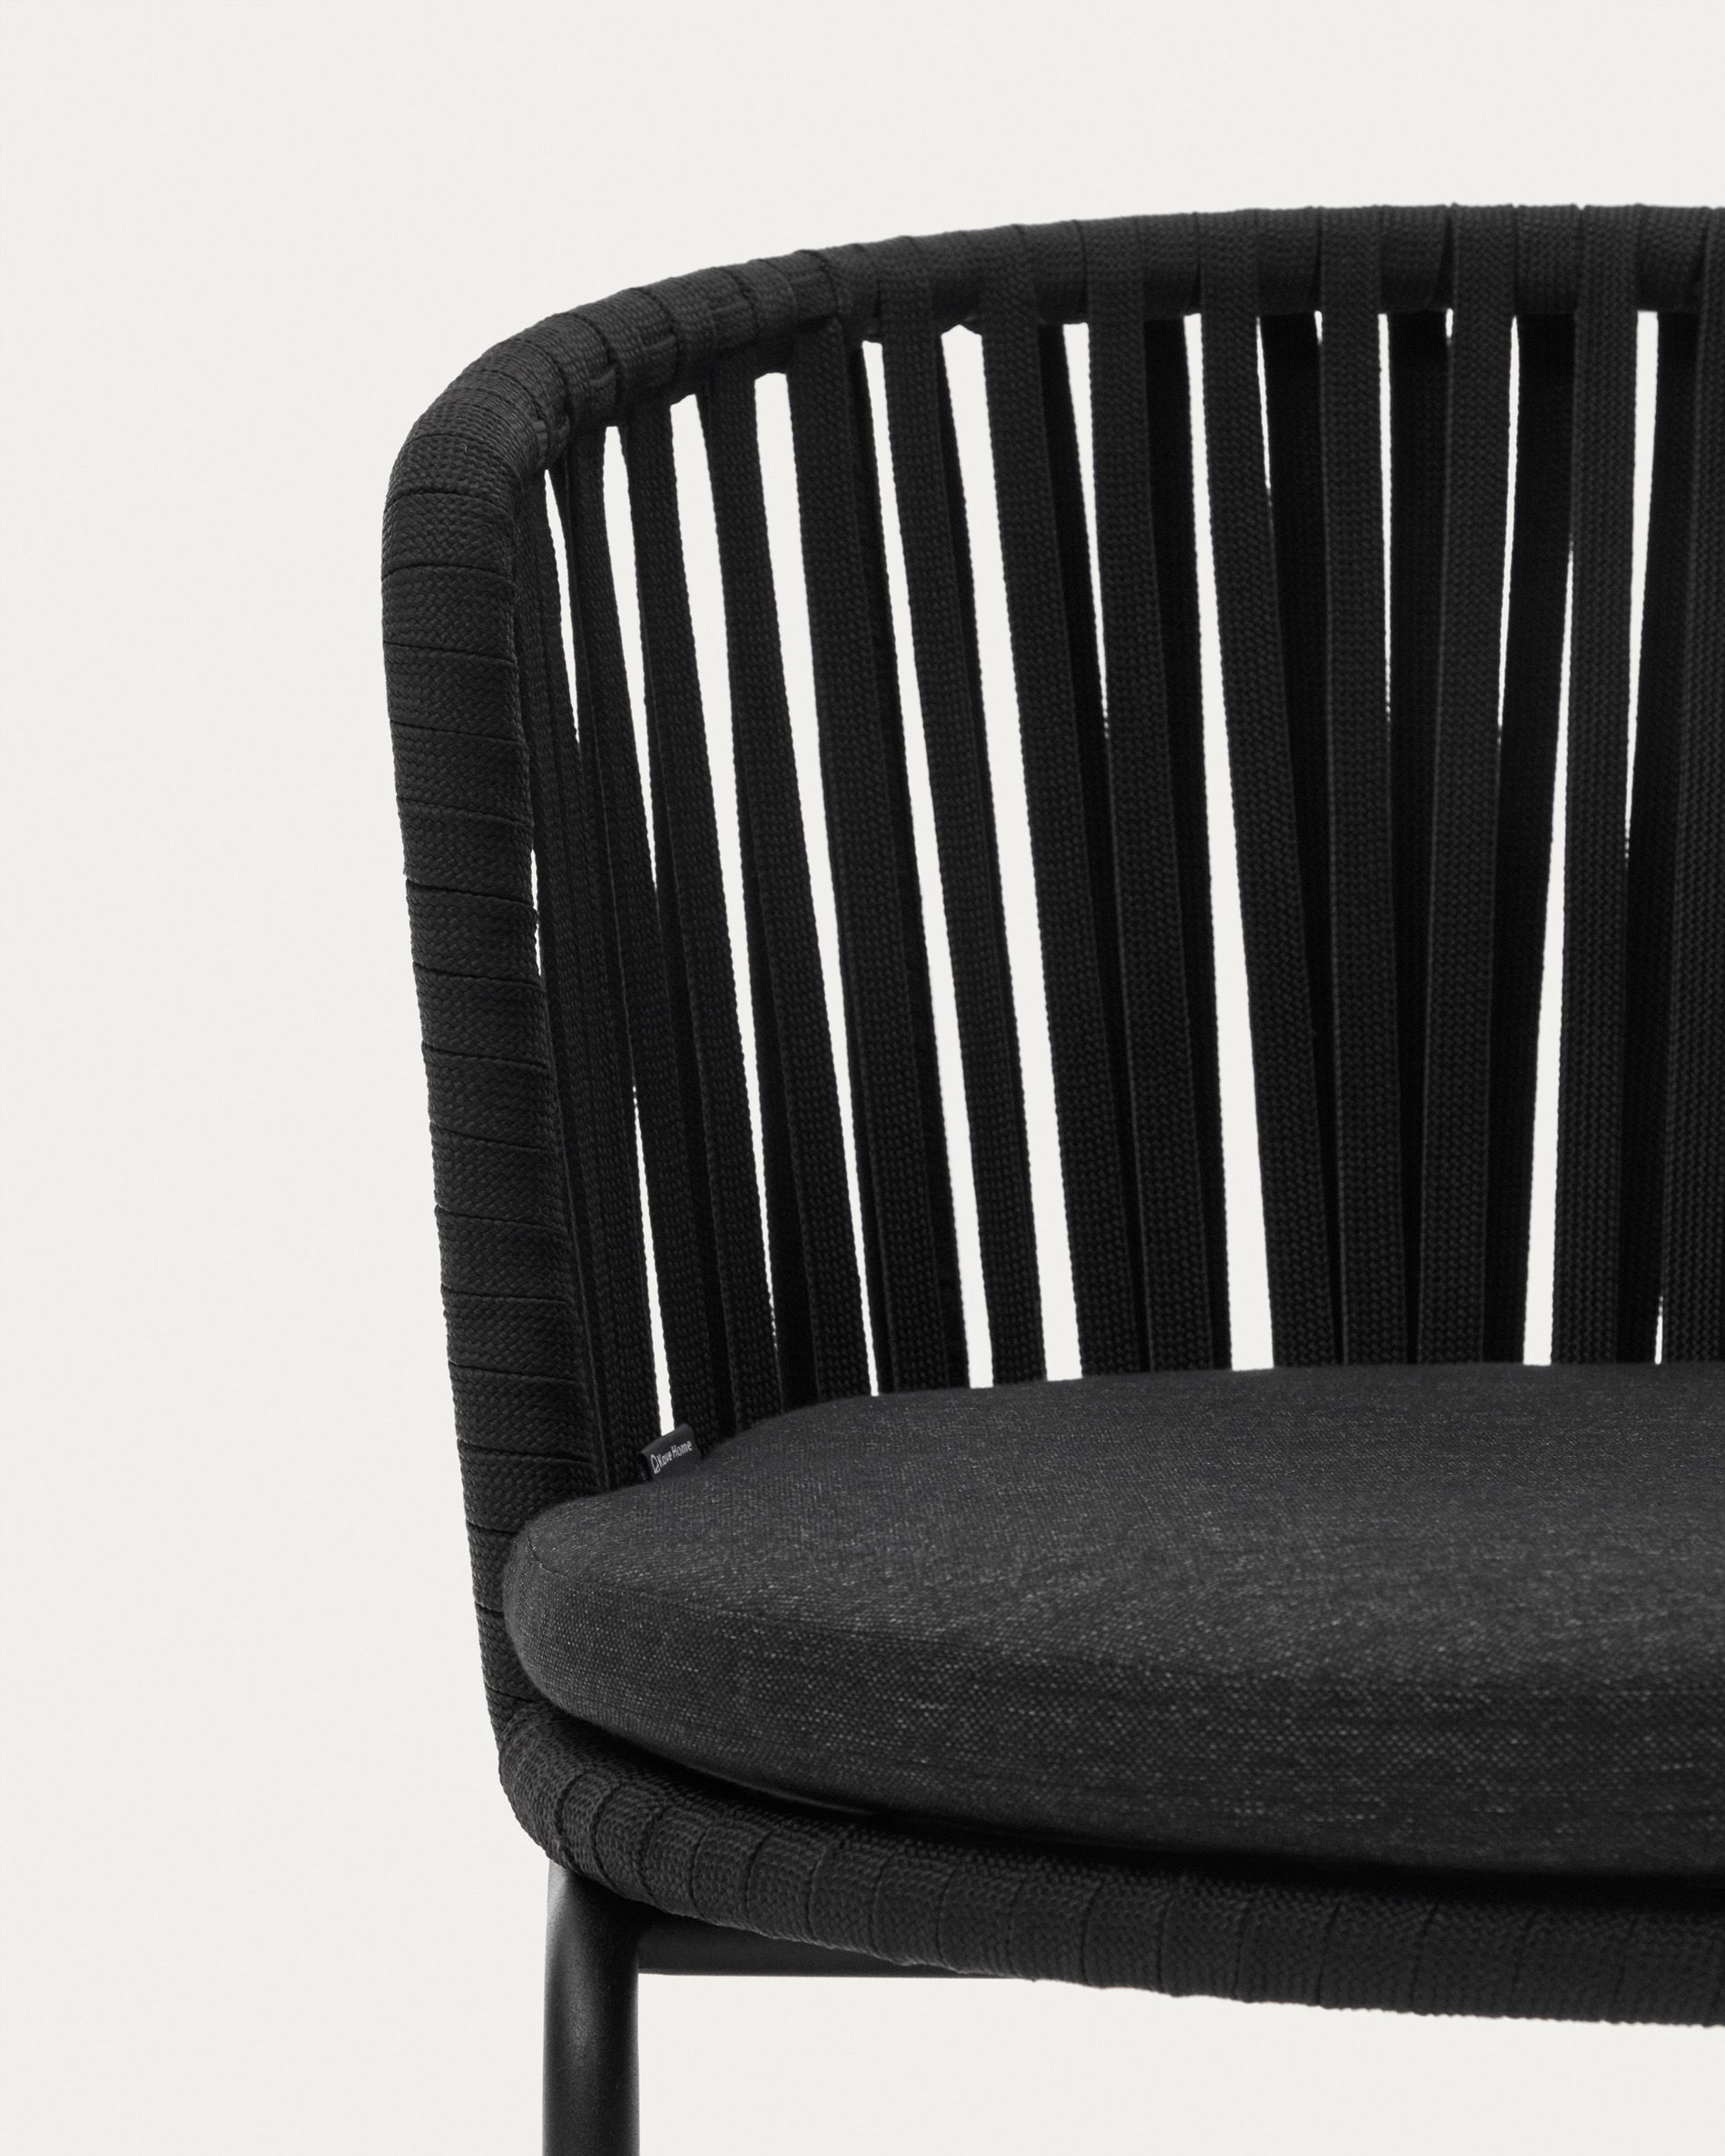 Saconca Садовый стул из шнура и стали с черной окраской Saconca